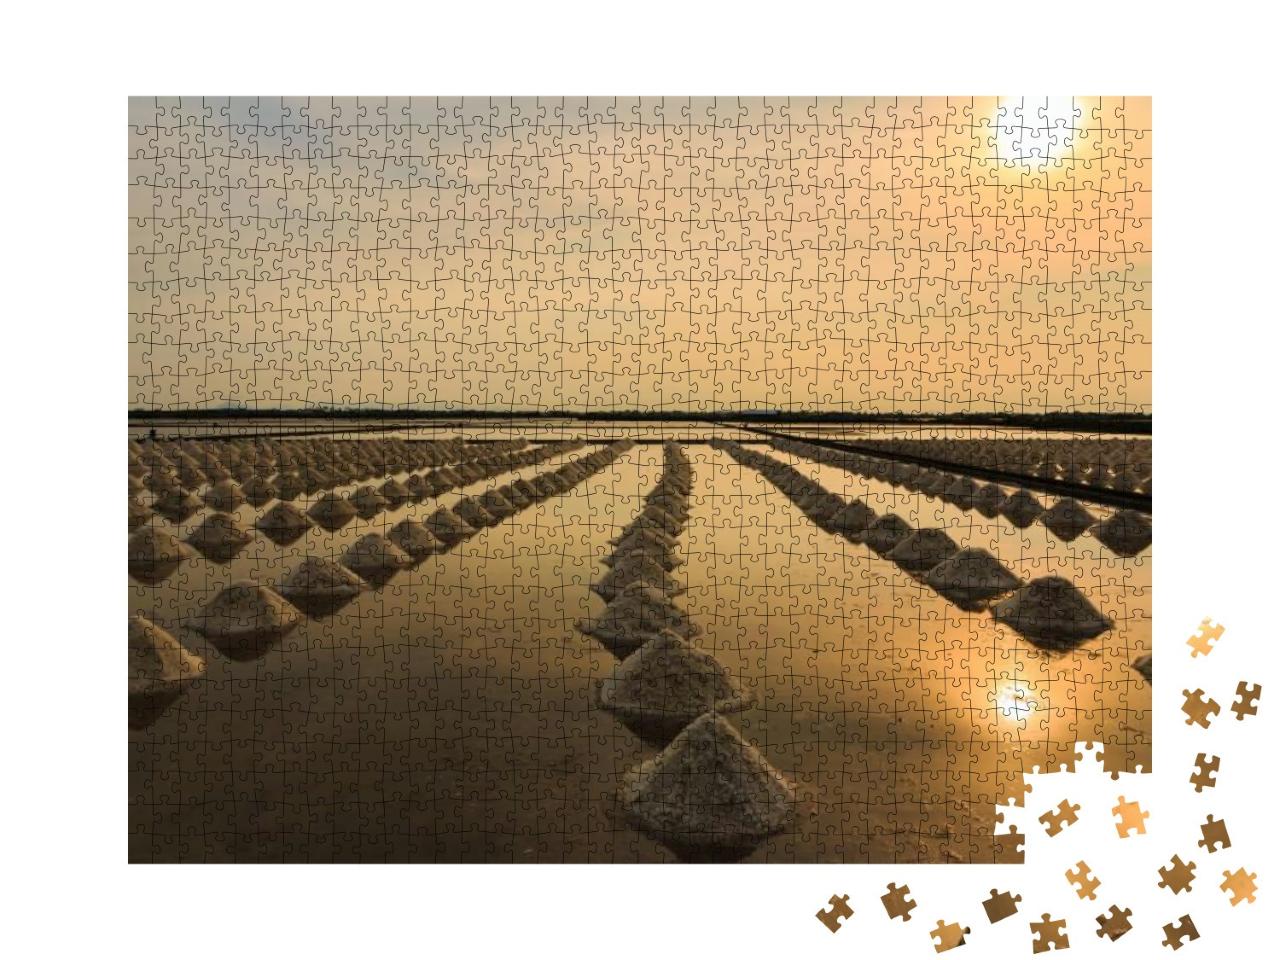 Puzzle 1000 Teile „Schöne Landschaft bei Sonnenuntergang, Salzfarm, Thailand“